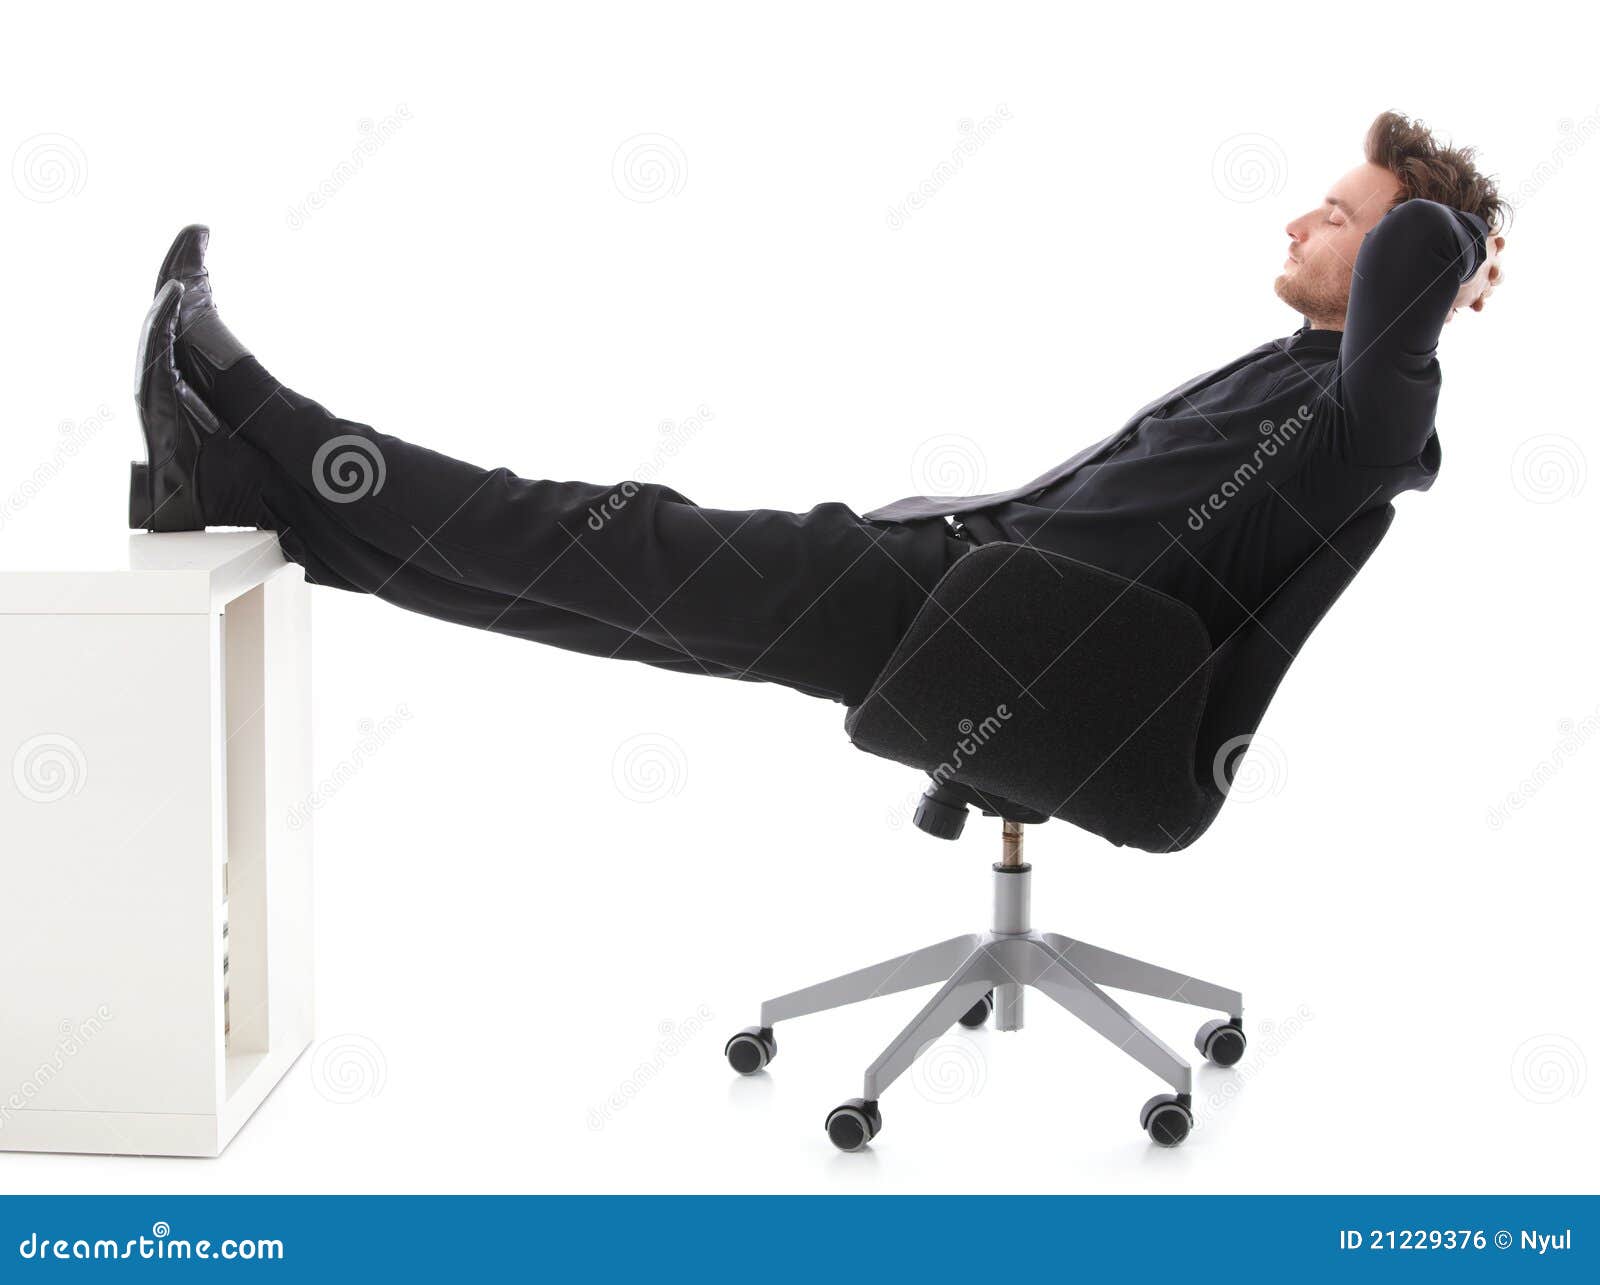 Мужчина лежит нога на ногу. Ноги на столе. Человек закинул ноги на стол. Человек сидит с ногами на столе. Бизнесмен ноги на столе.